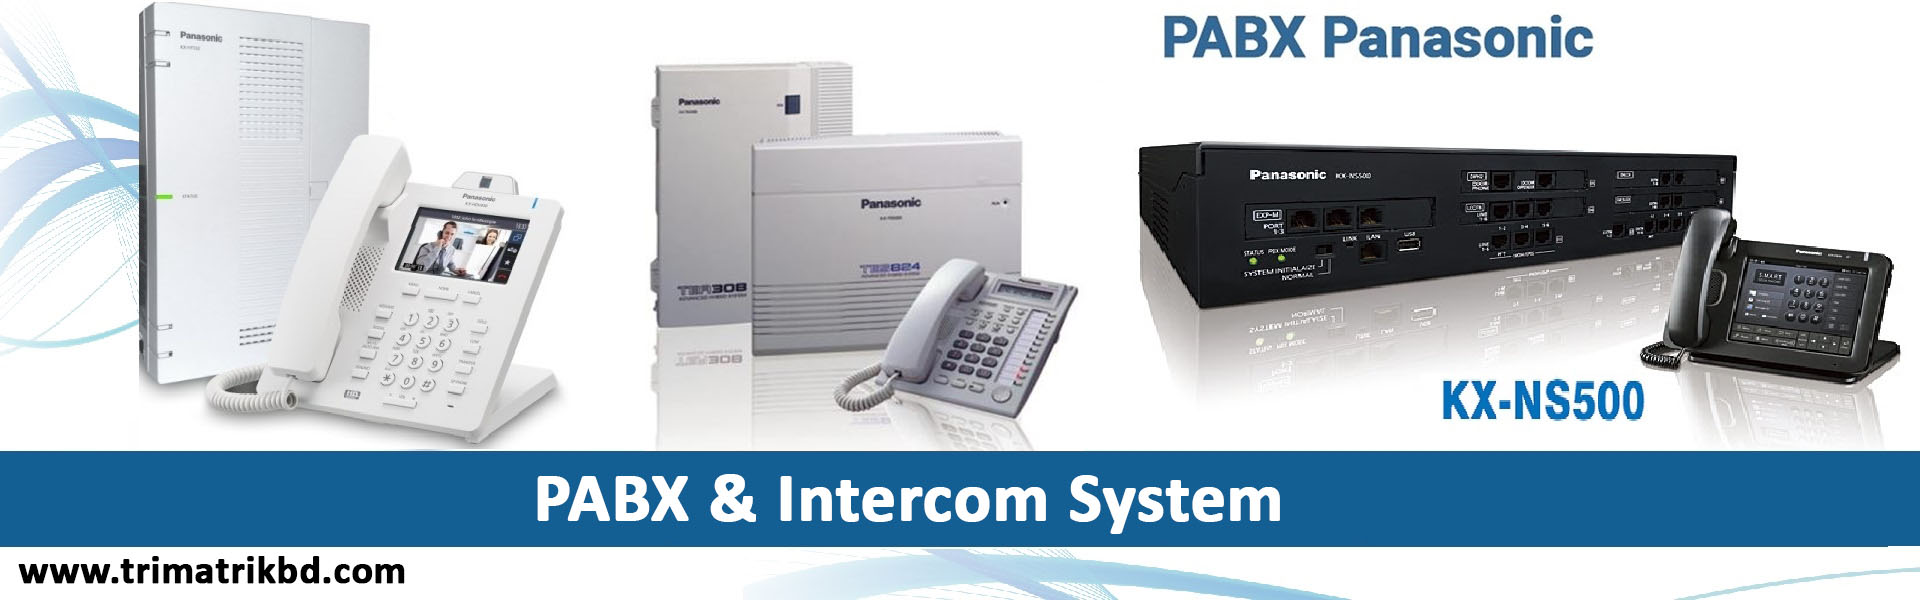 Panasonic pabx price in Bangladesh